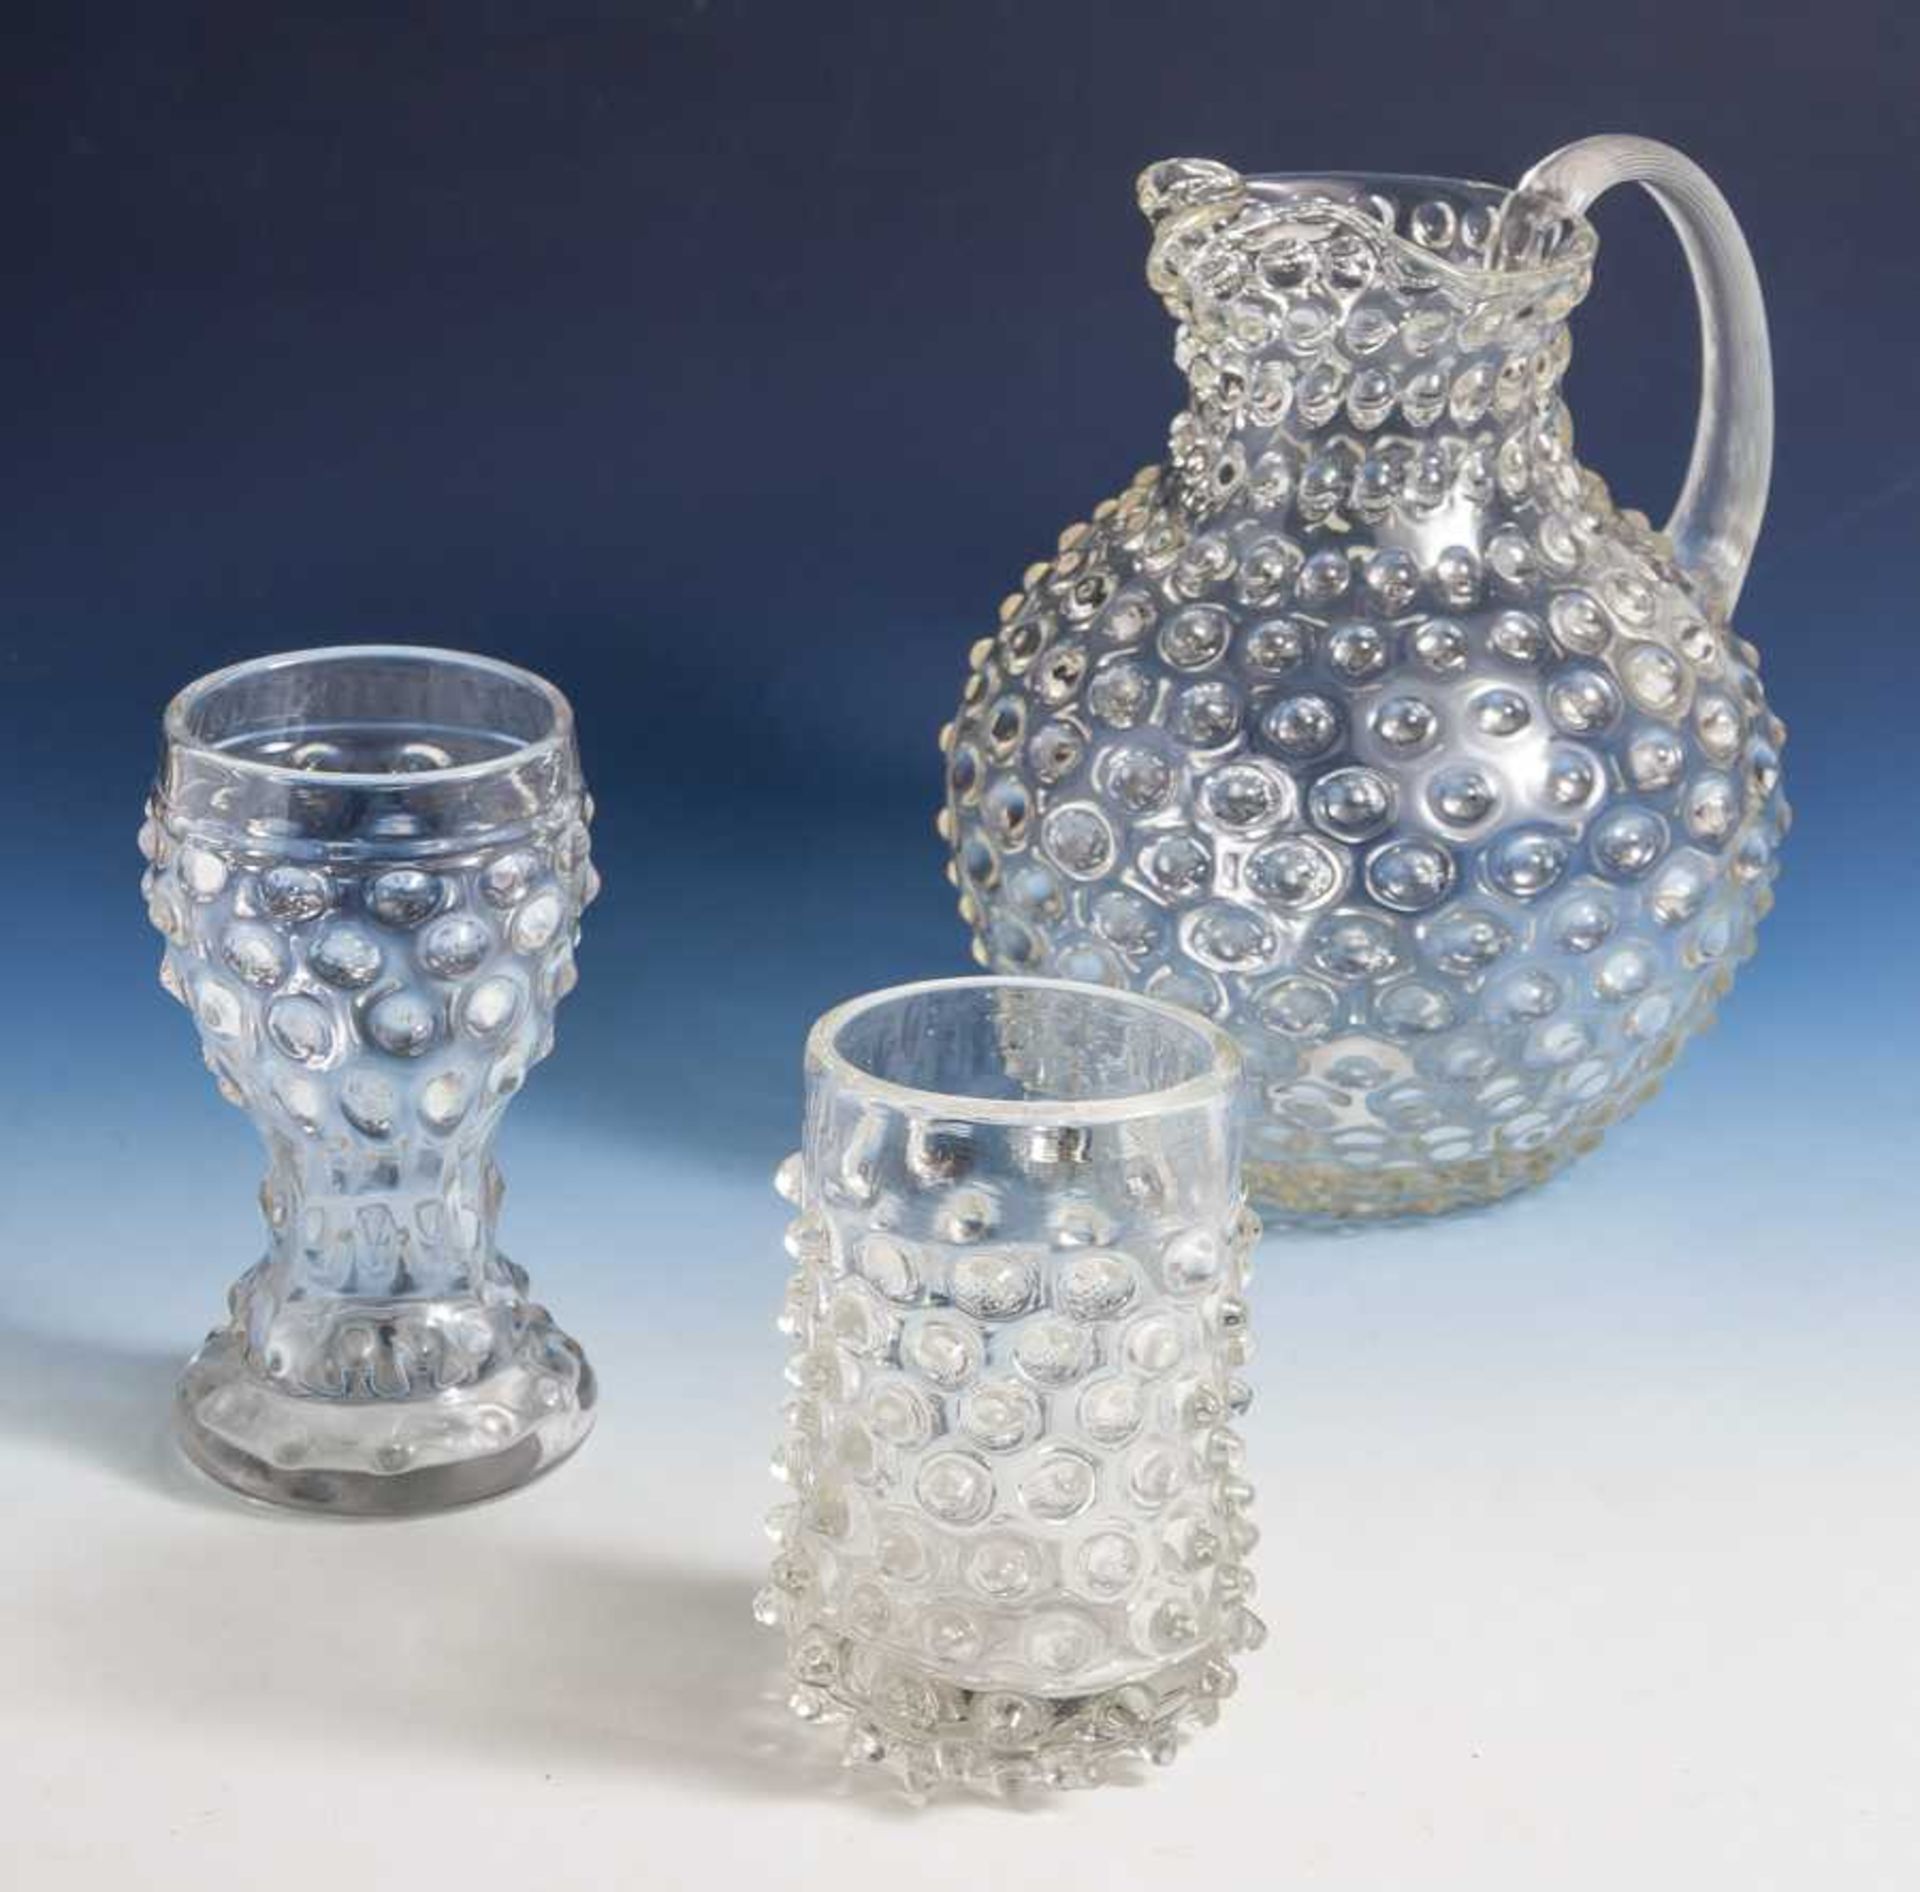 3 Teile Glas mit Noppenbesatz, 19. Jahrhundert, farbloses Glas mit plastischen Noppenbesetzt.